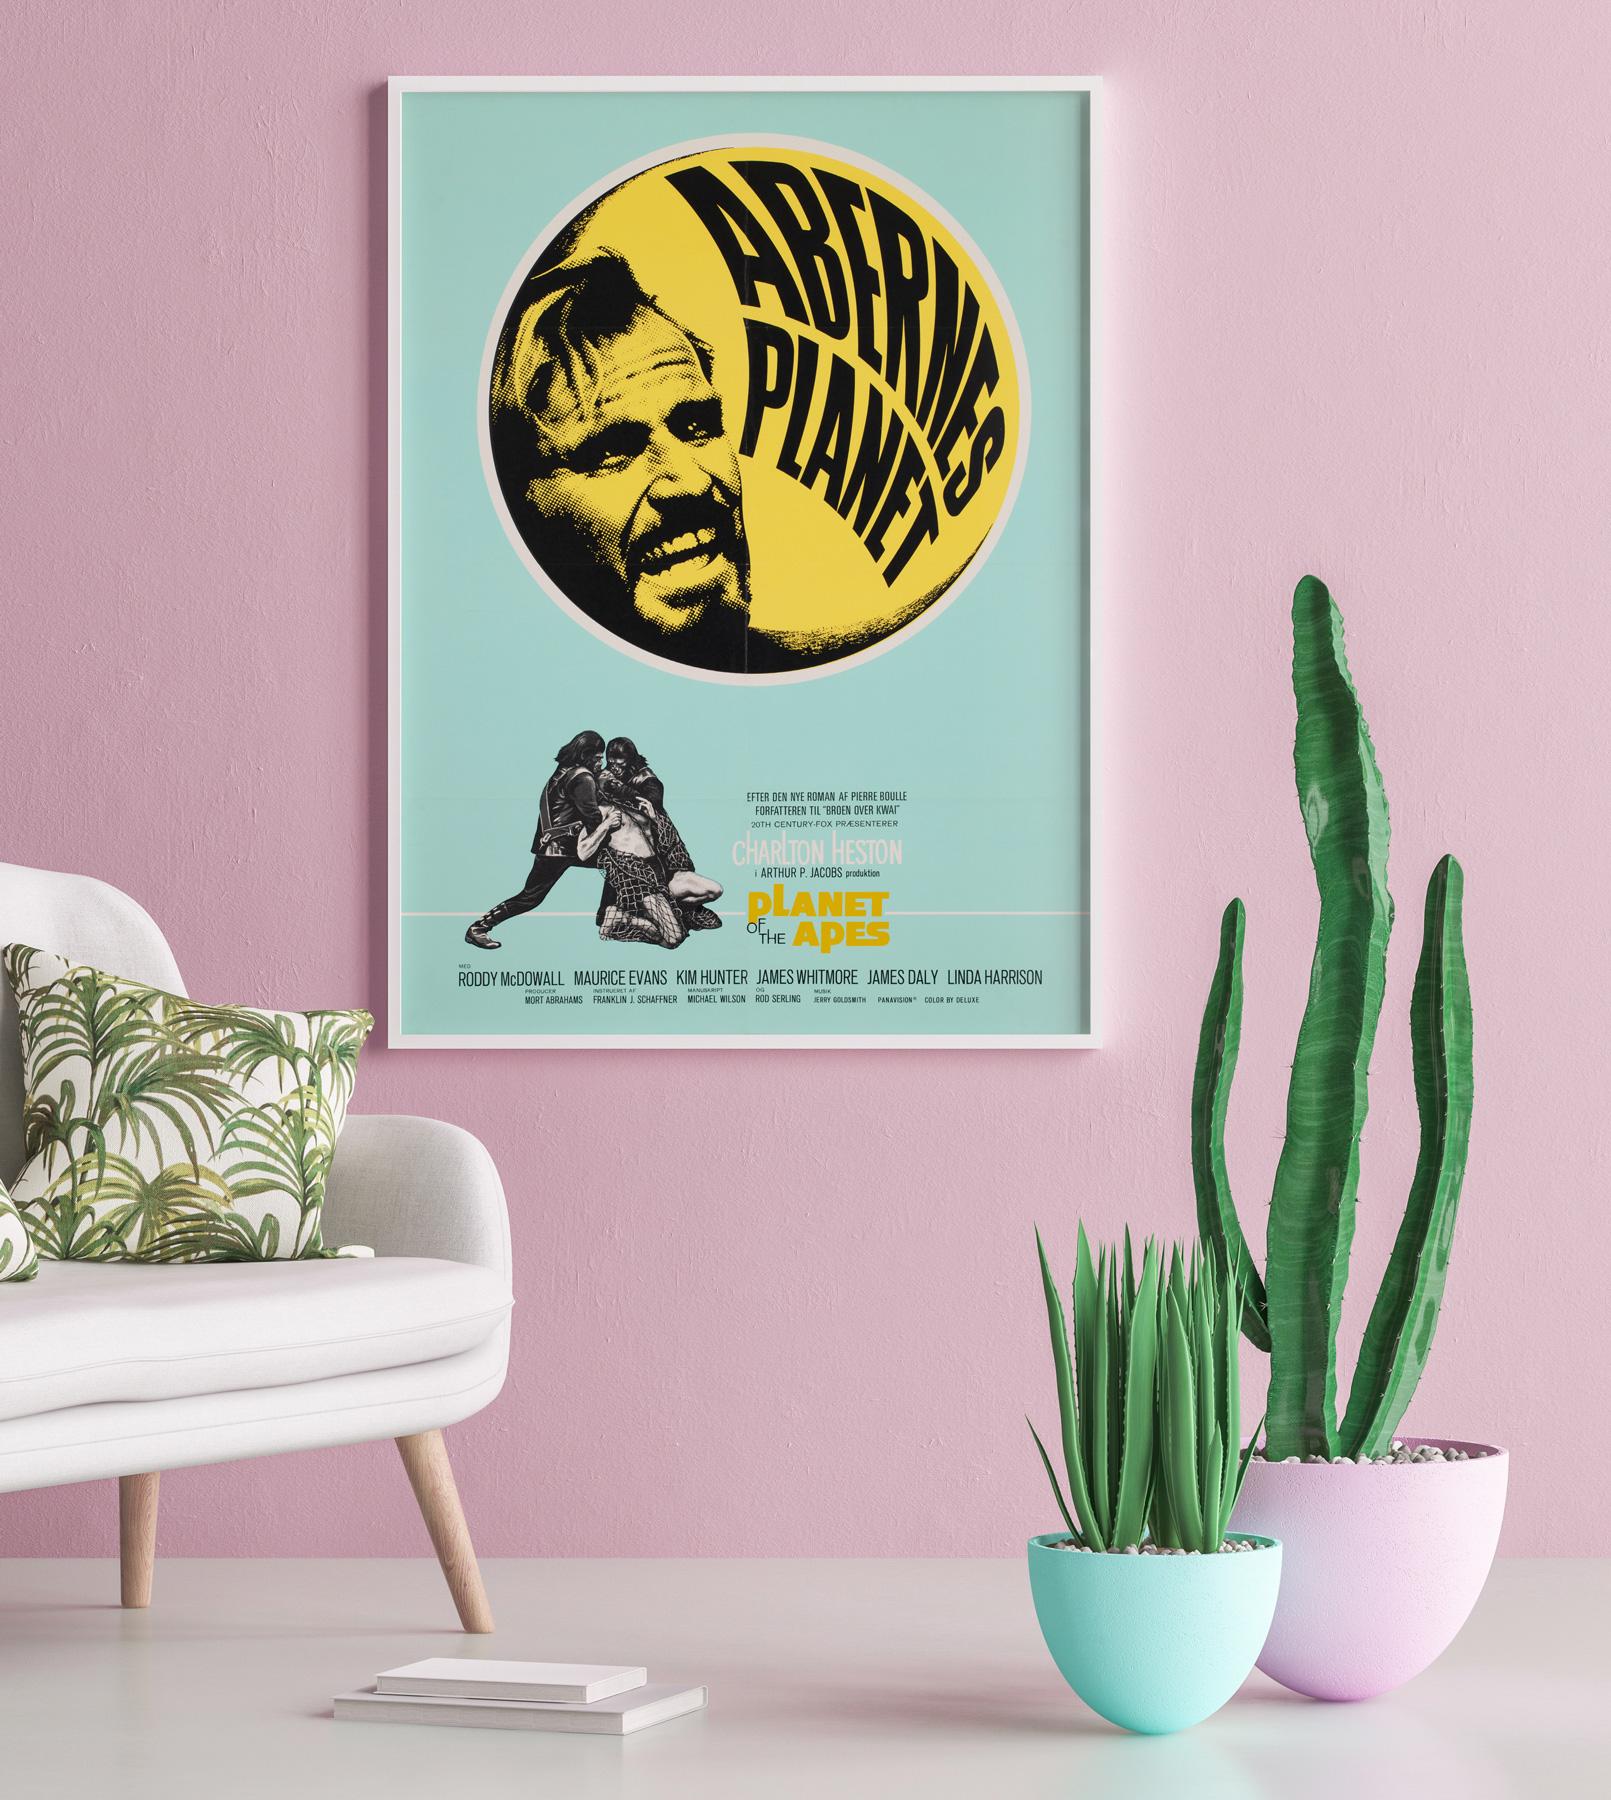 Cette affiche danoise originale de la première année de sortie du film de science-fiction Plant of the Apes présente un design saisissant. Merveilleuses couleurs.

Cette affiche de film vintage originale a des dimensions de 24 1/2 x 33 1/2 pouces.